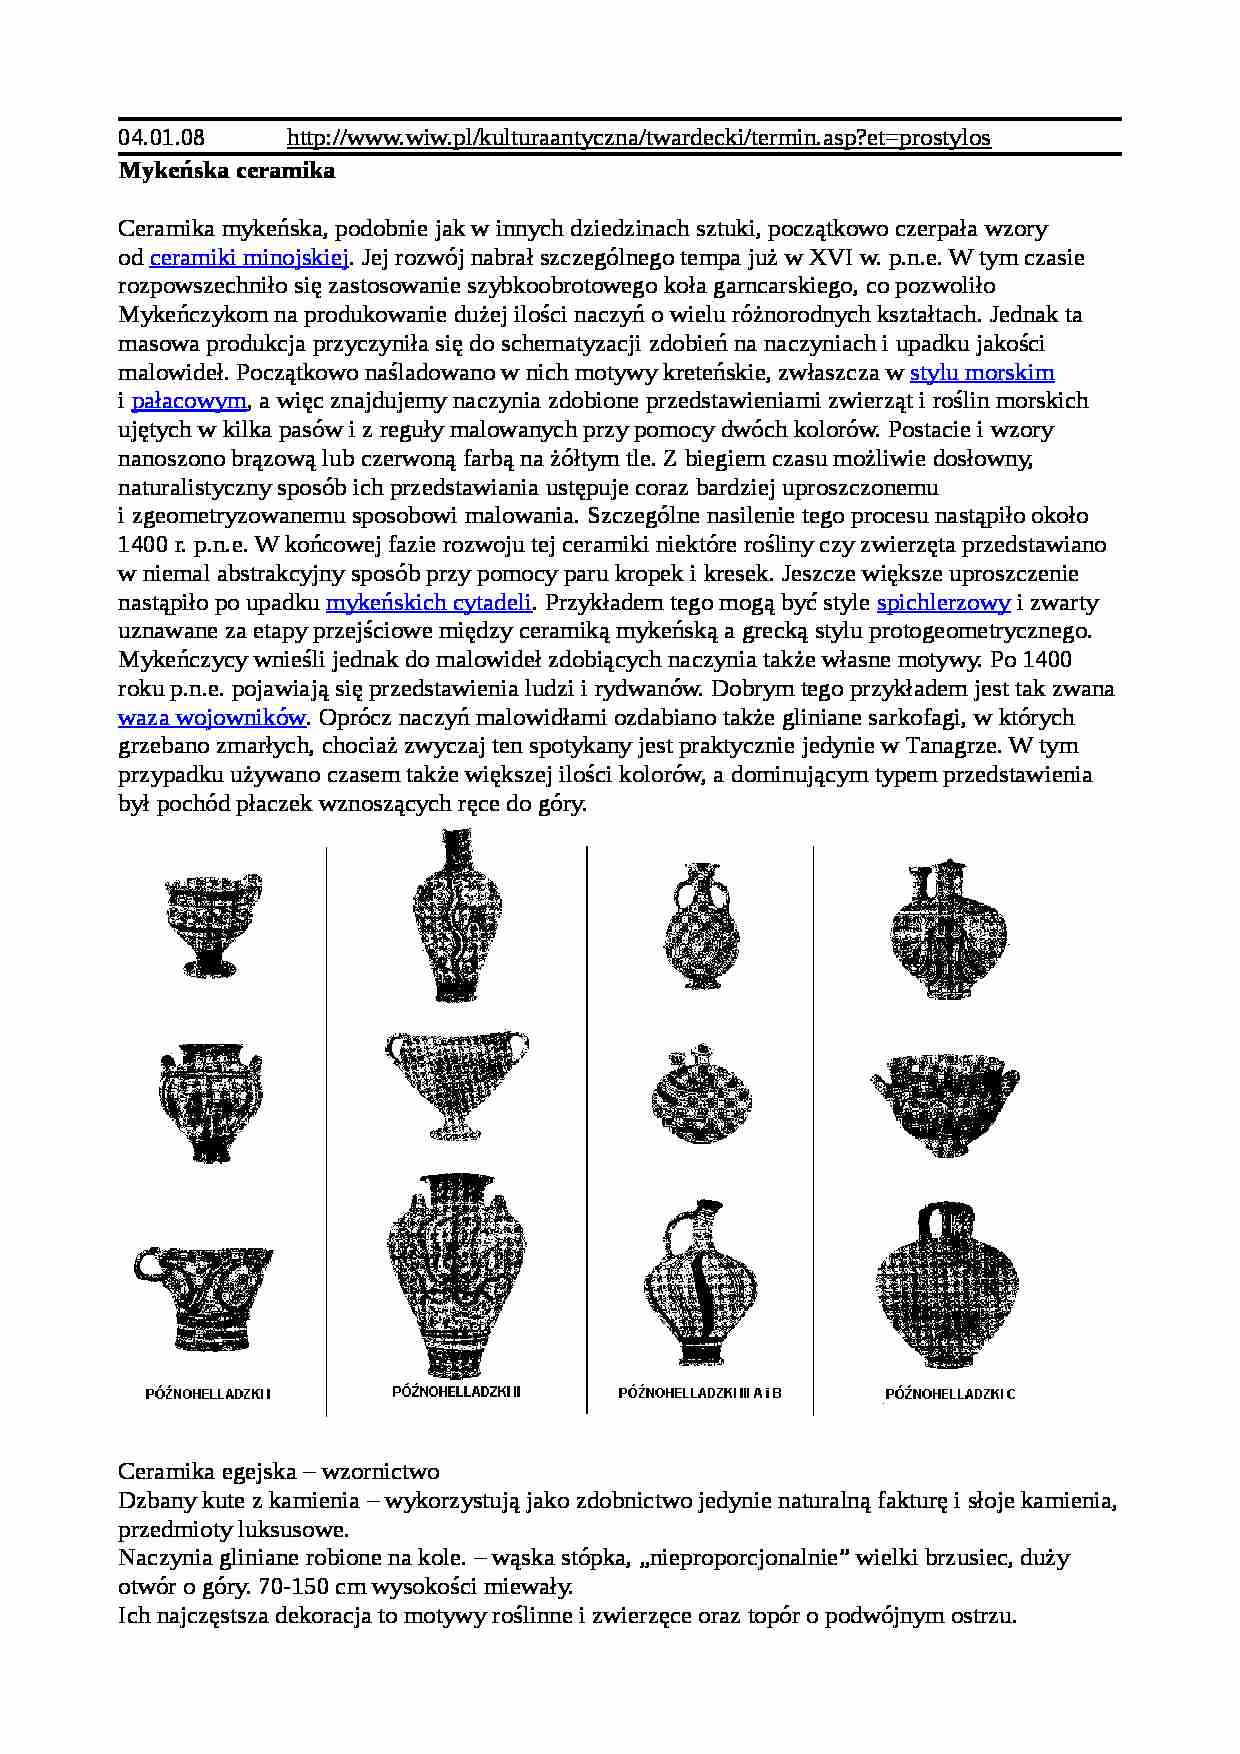 Historia sztuki starożytnej - Grecja  - strona 1